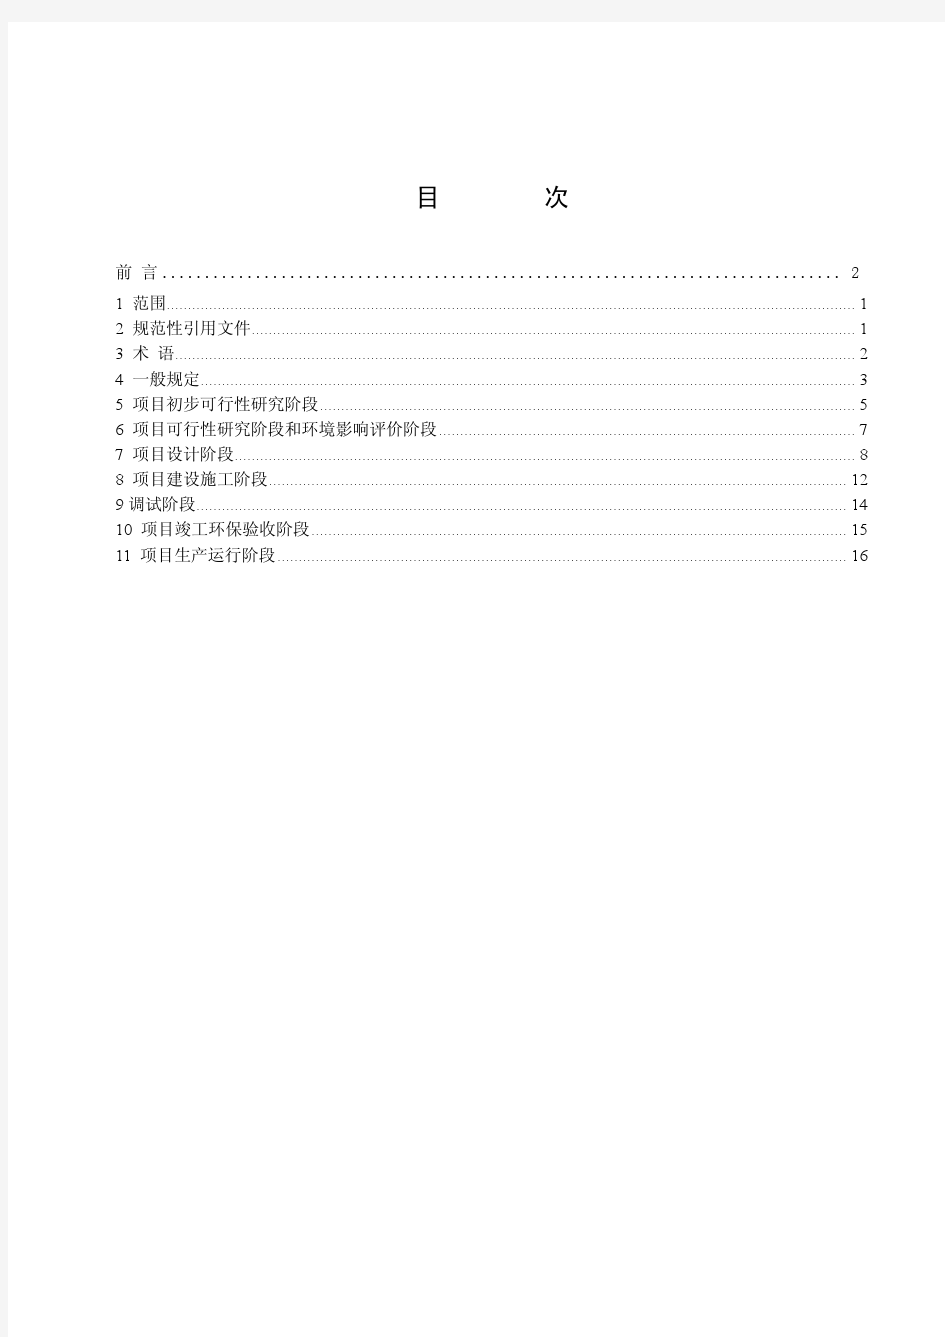 中国华电集团公司燃气发电机组及分布式能源站项目噪声防治技术导则(A版) 2